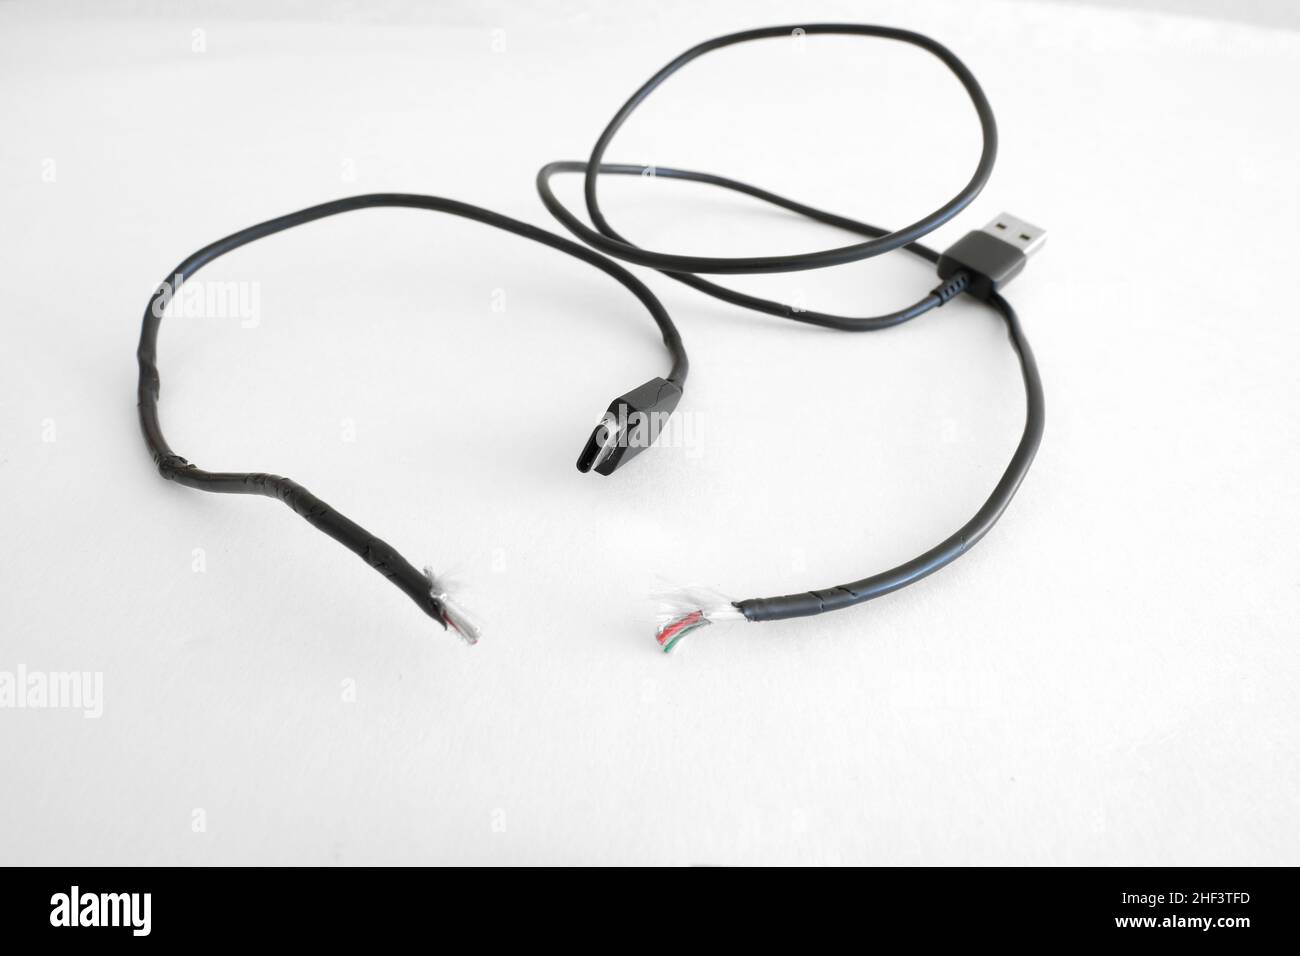 USB-Ladekabel des Telefons vom Typ C ausgefranst, defekt, gerissen und getrennt, was zu einer Fehlkommunikation oder mangelnder Kommunikation zwischen zwei Parteien führt. Stockfoto